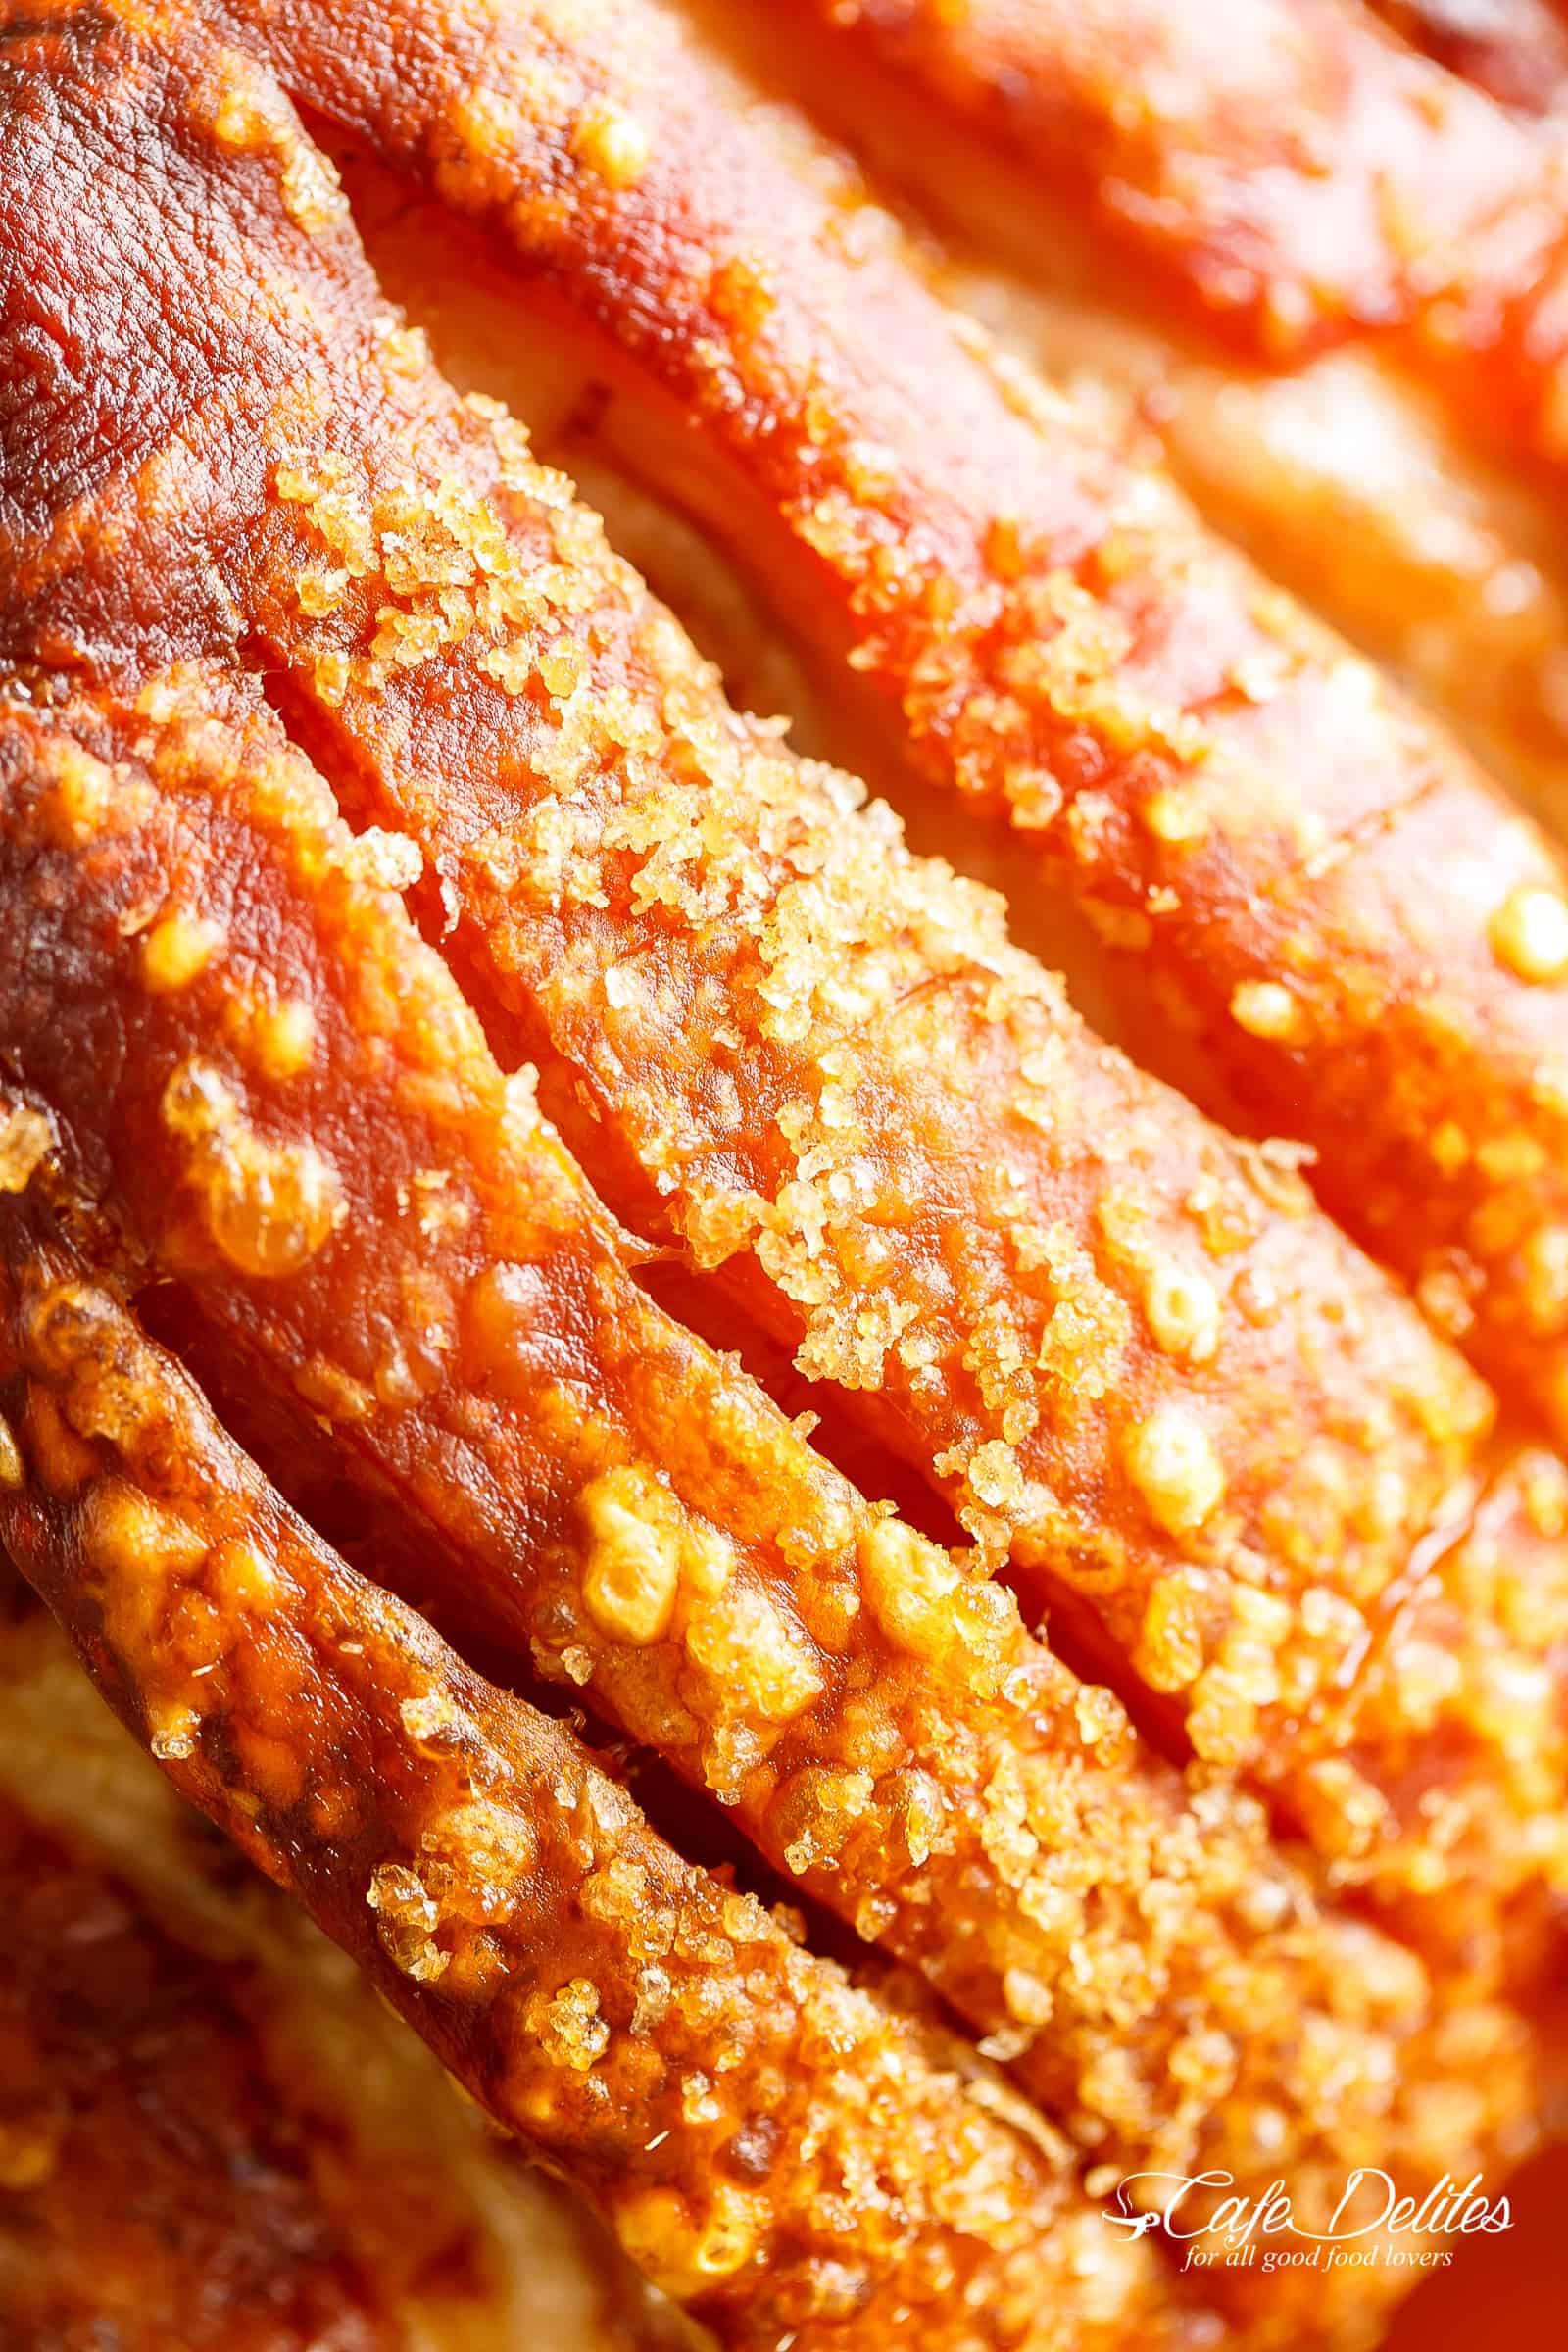 Pork Roast With Crackling! Roasting a pork shoulder or butt is so easy, but to get the crackle makes | cafedelites.com